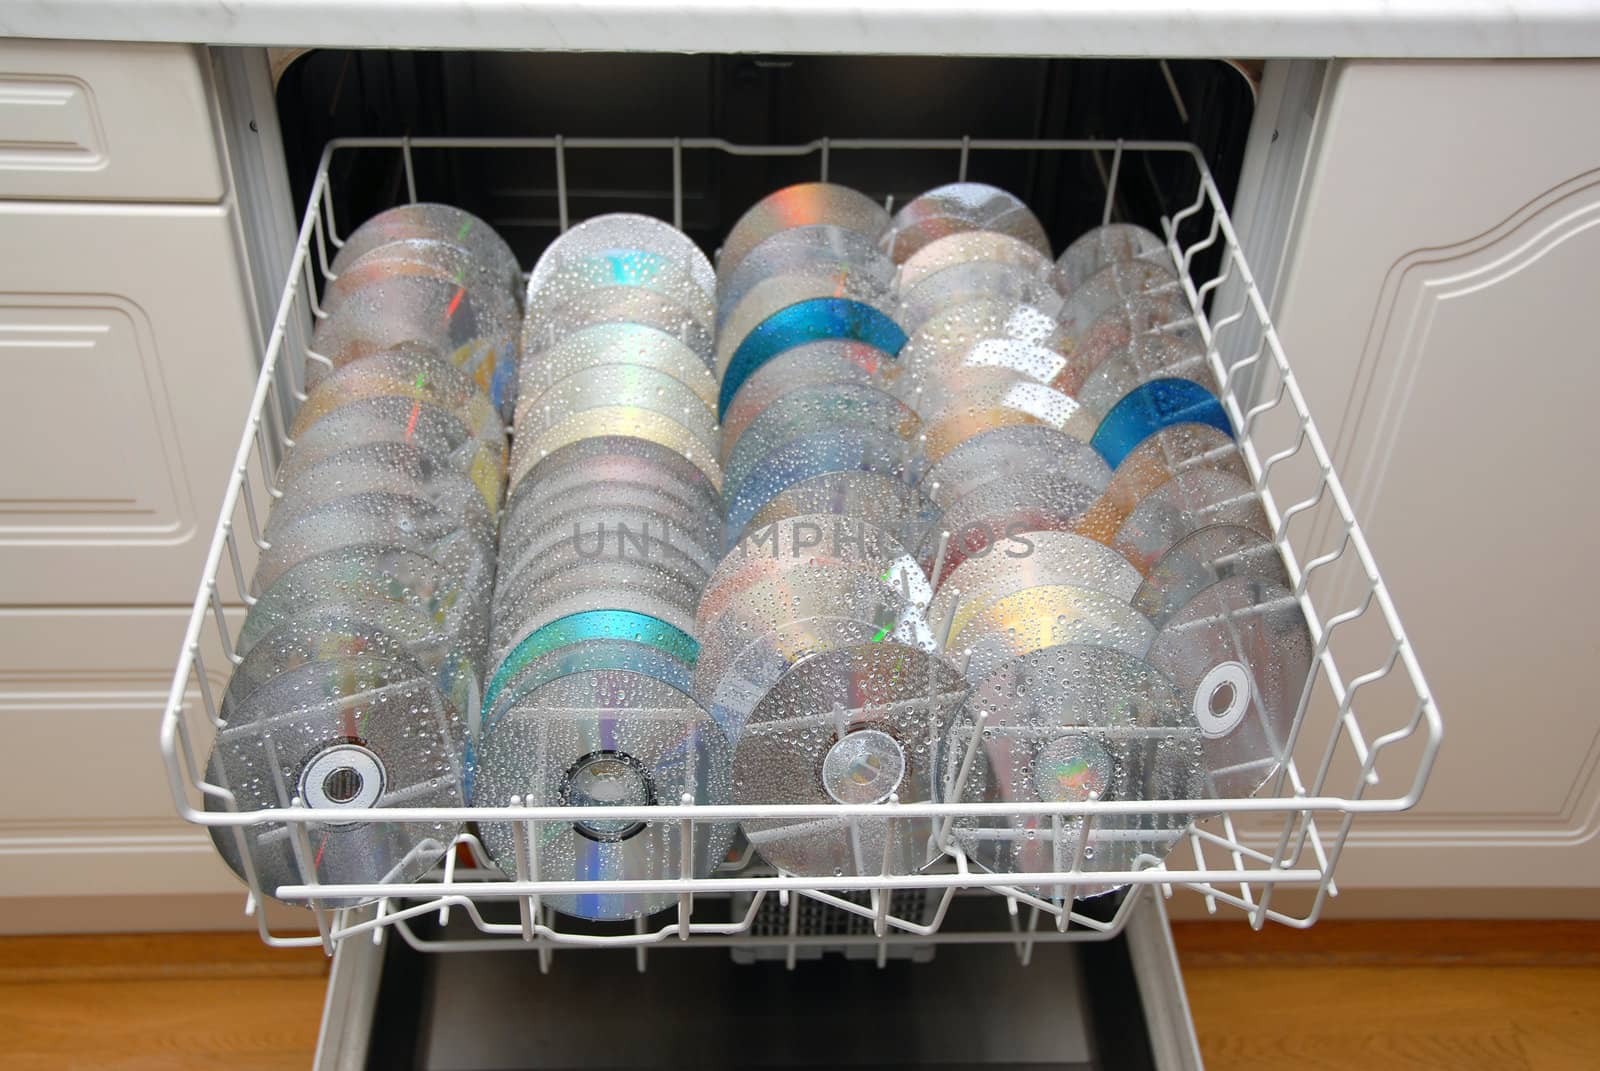 Washing cd / Dvd`s in  dishwash machine.
Selective focus.
Norway 2009.